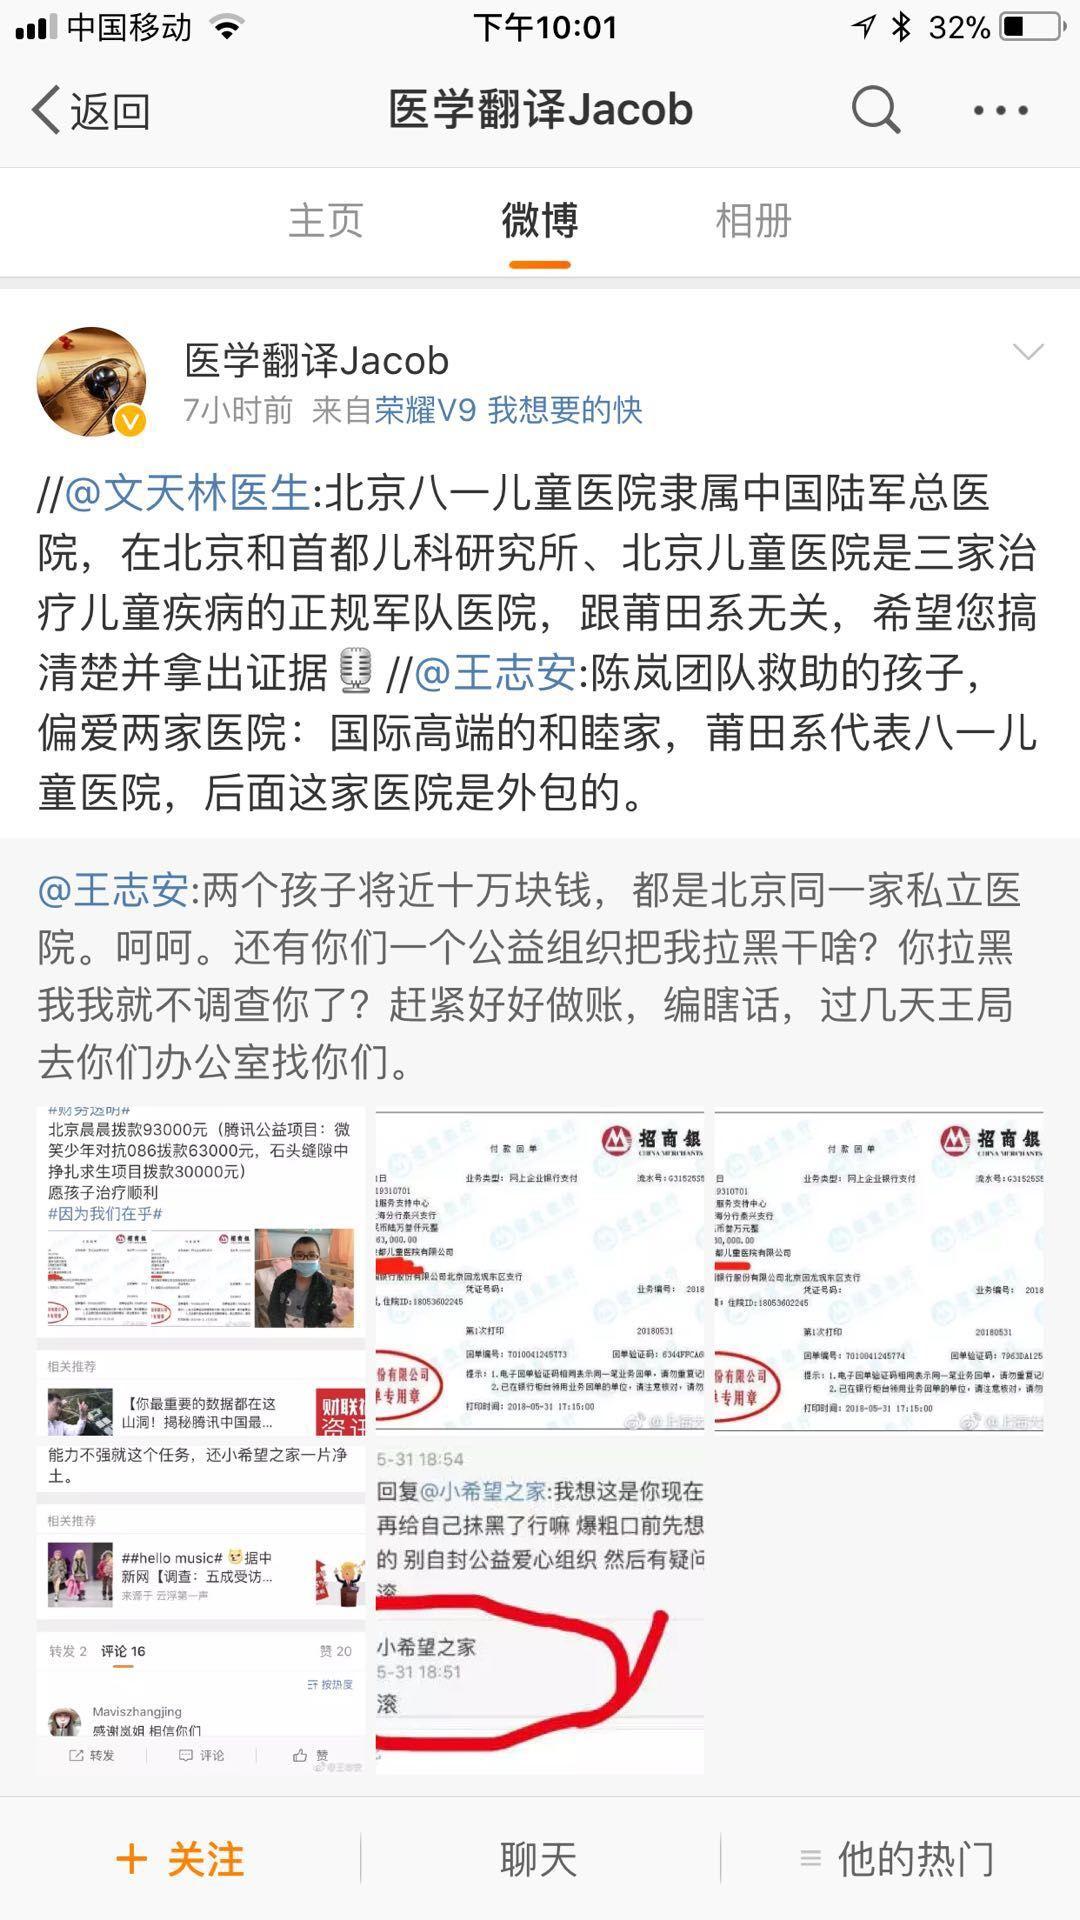 如何评价《局面》王志安对王凤雅事件的采访?